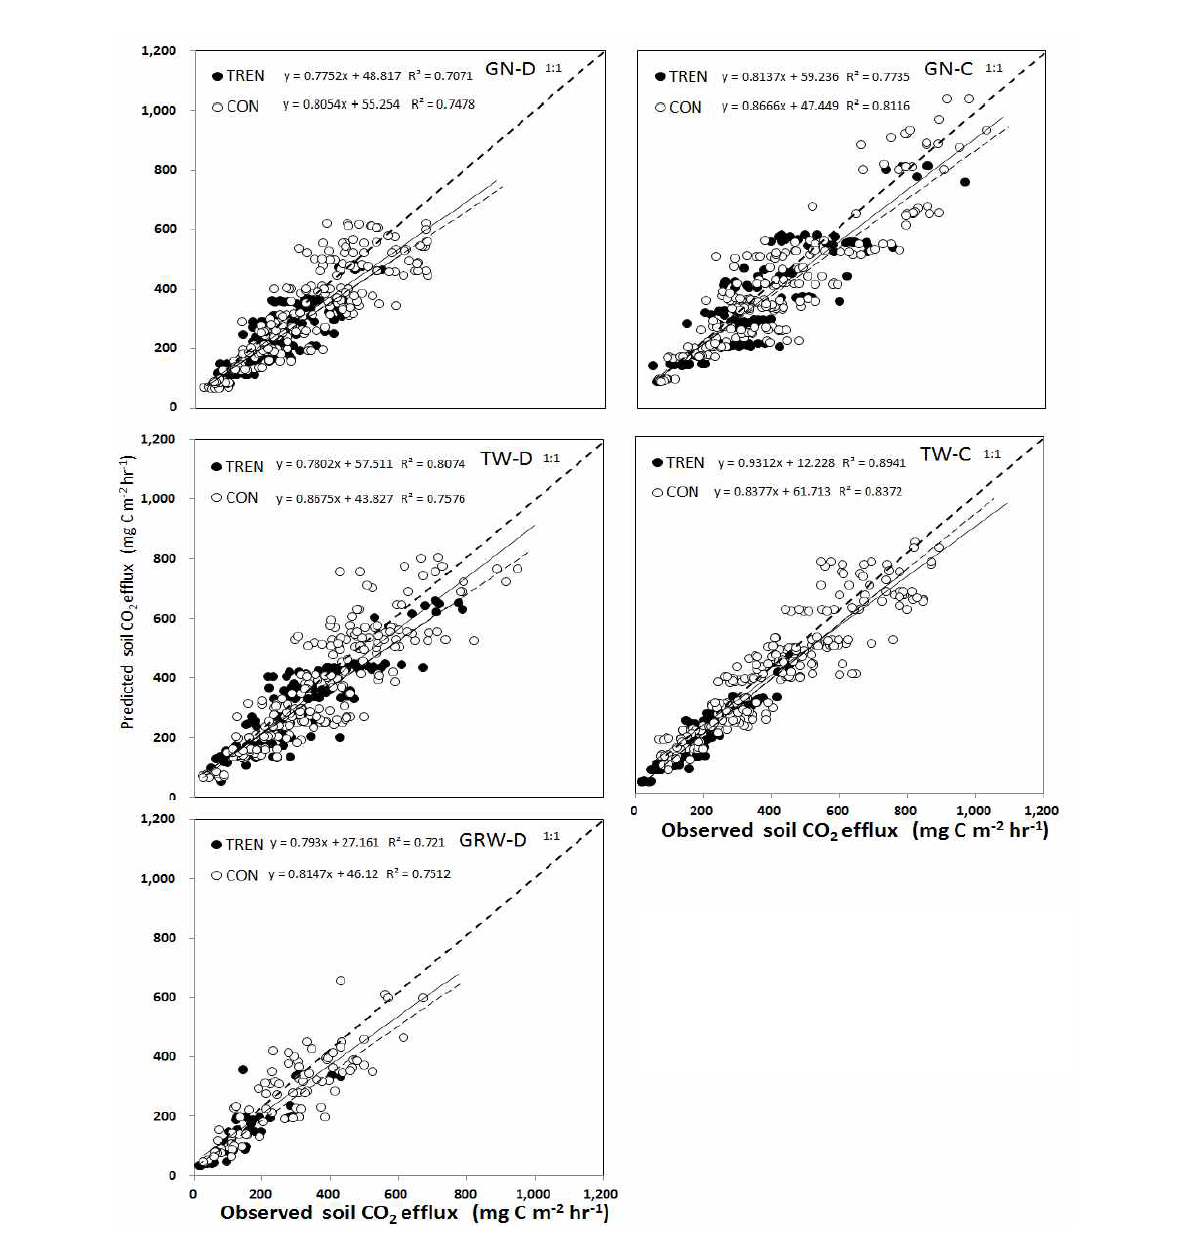 조사지별 토양 CO2 방출 속도의 측정치와 예측치의 관계